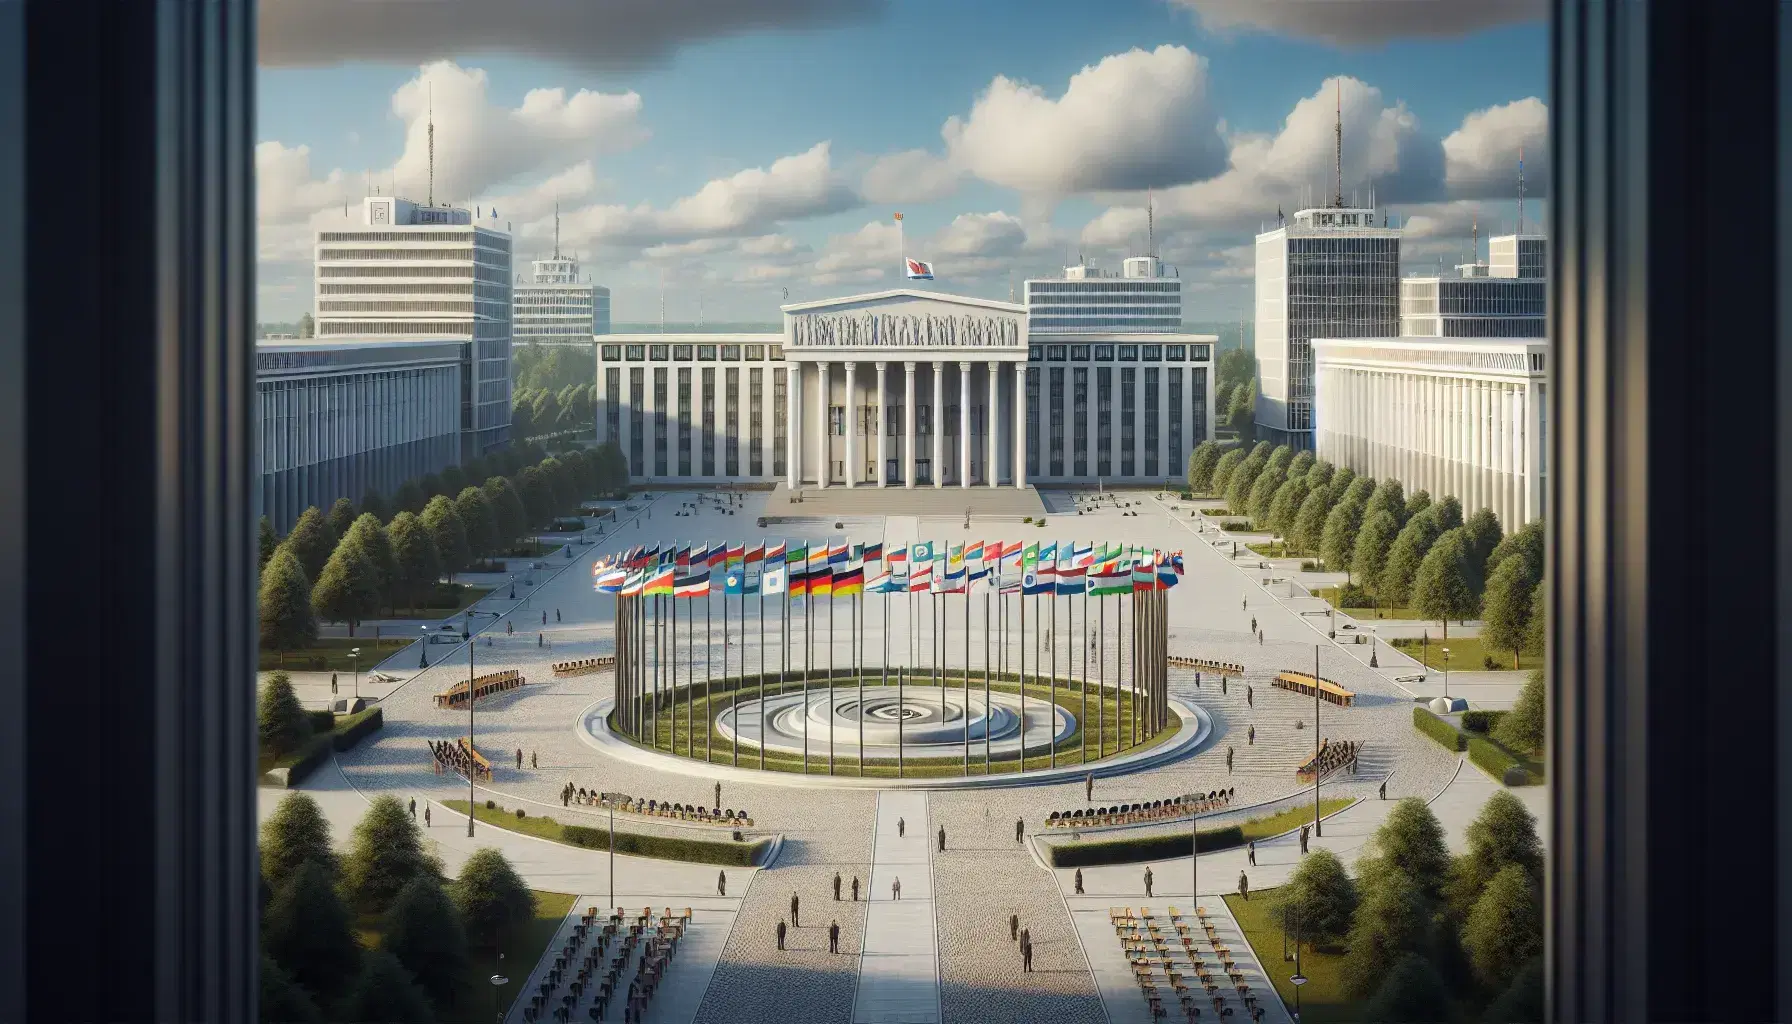 Edificios gubernamentales de estilos arquitectónicos variados en una plaza amplia con banderas de colores, personas dispersas y árboles al fondo bajo un cielo despejado.